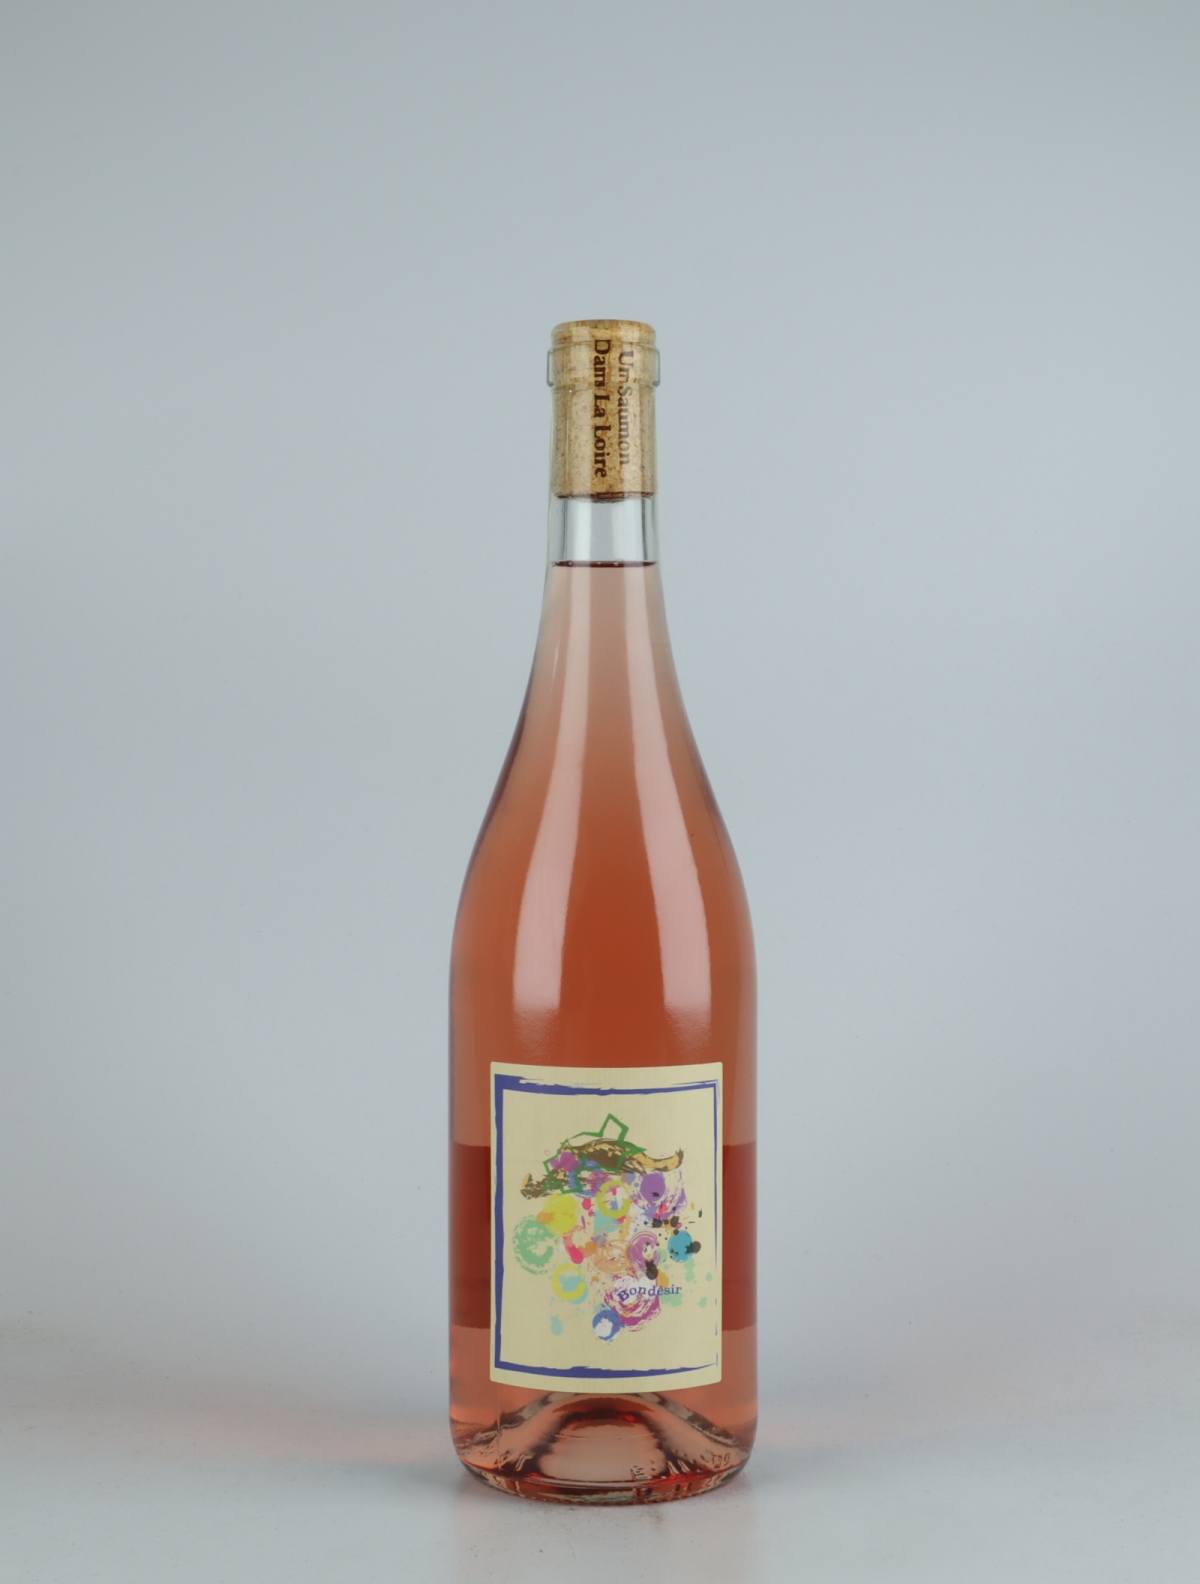 A bottle 2021 Rosé - Vin de Frantz Rosé from Frantz Saumon, Loire in France